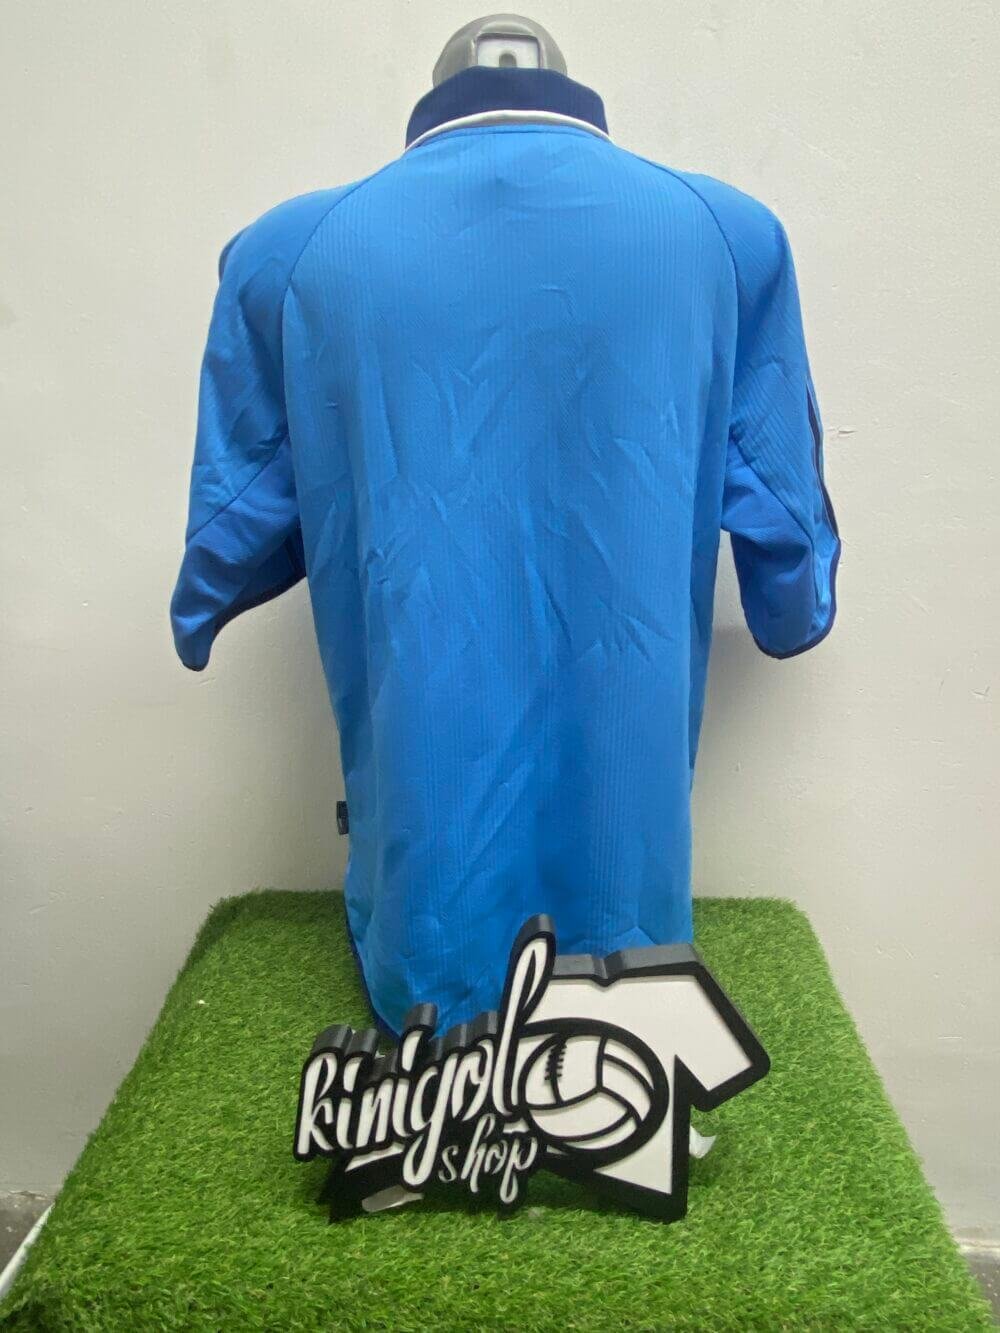 Camiseta-Real-madrid-1999-kiniglshop-3